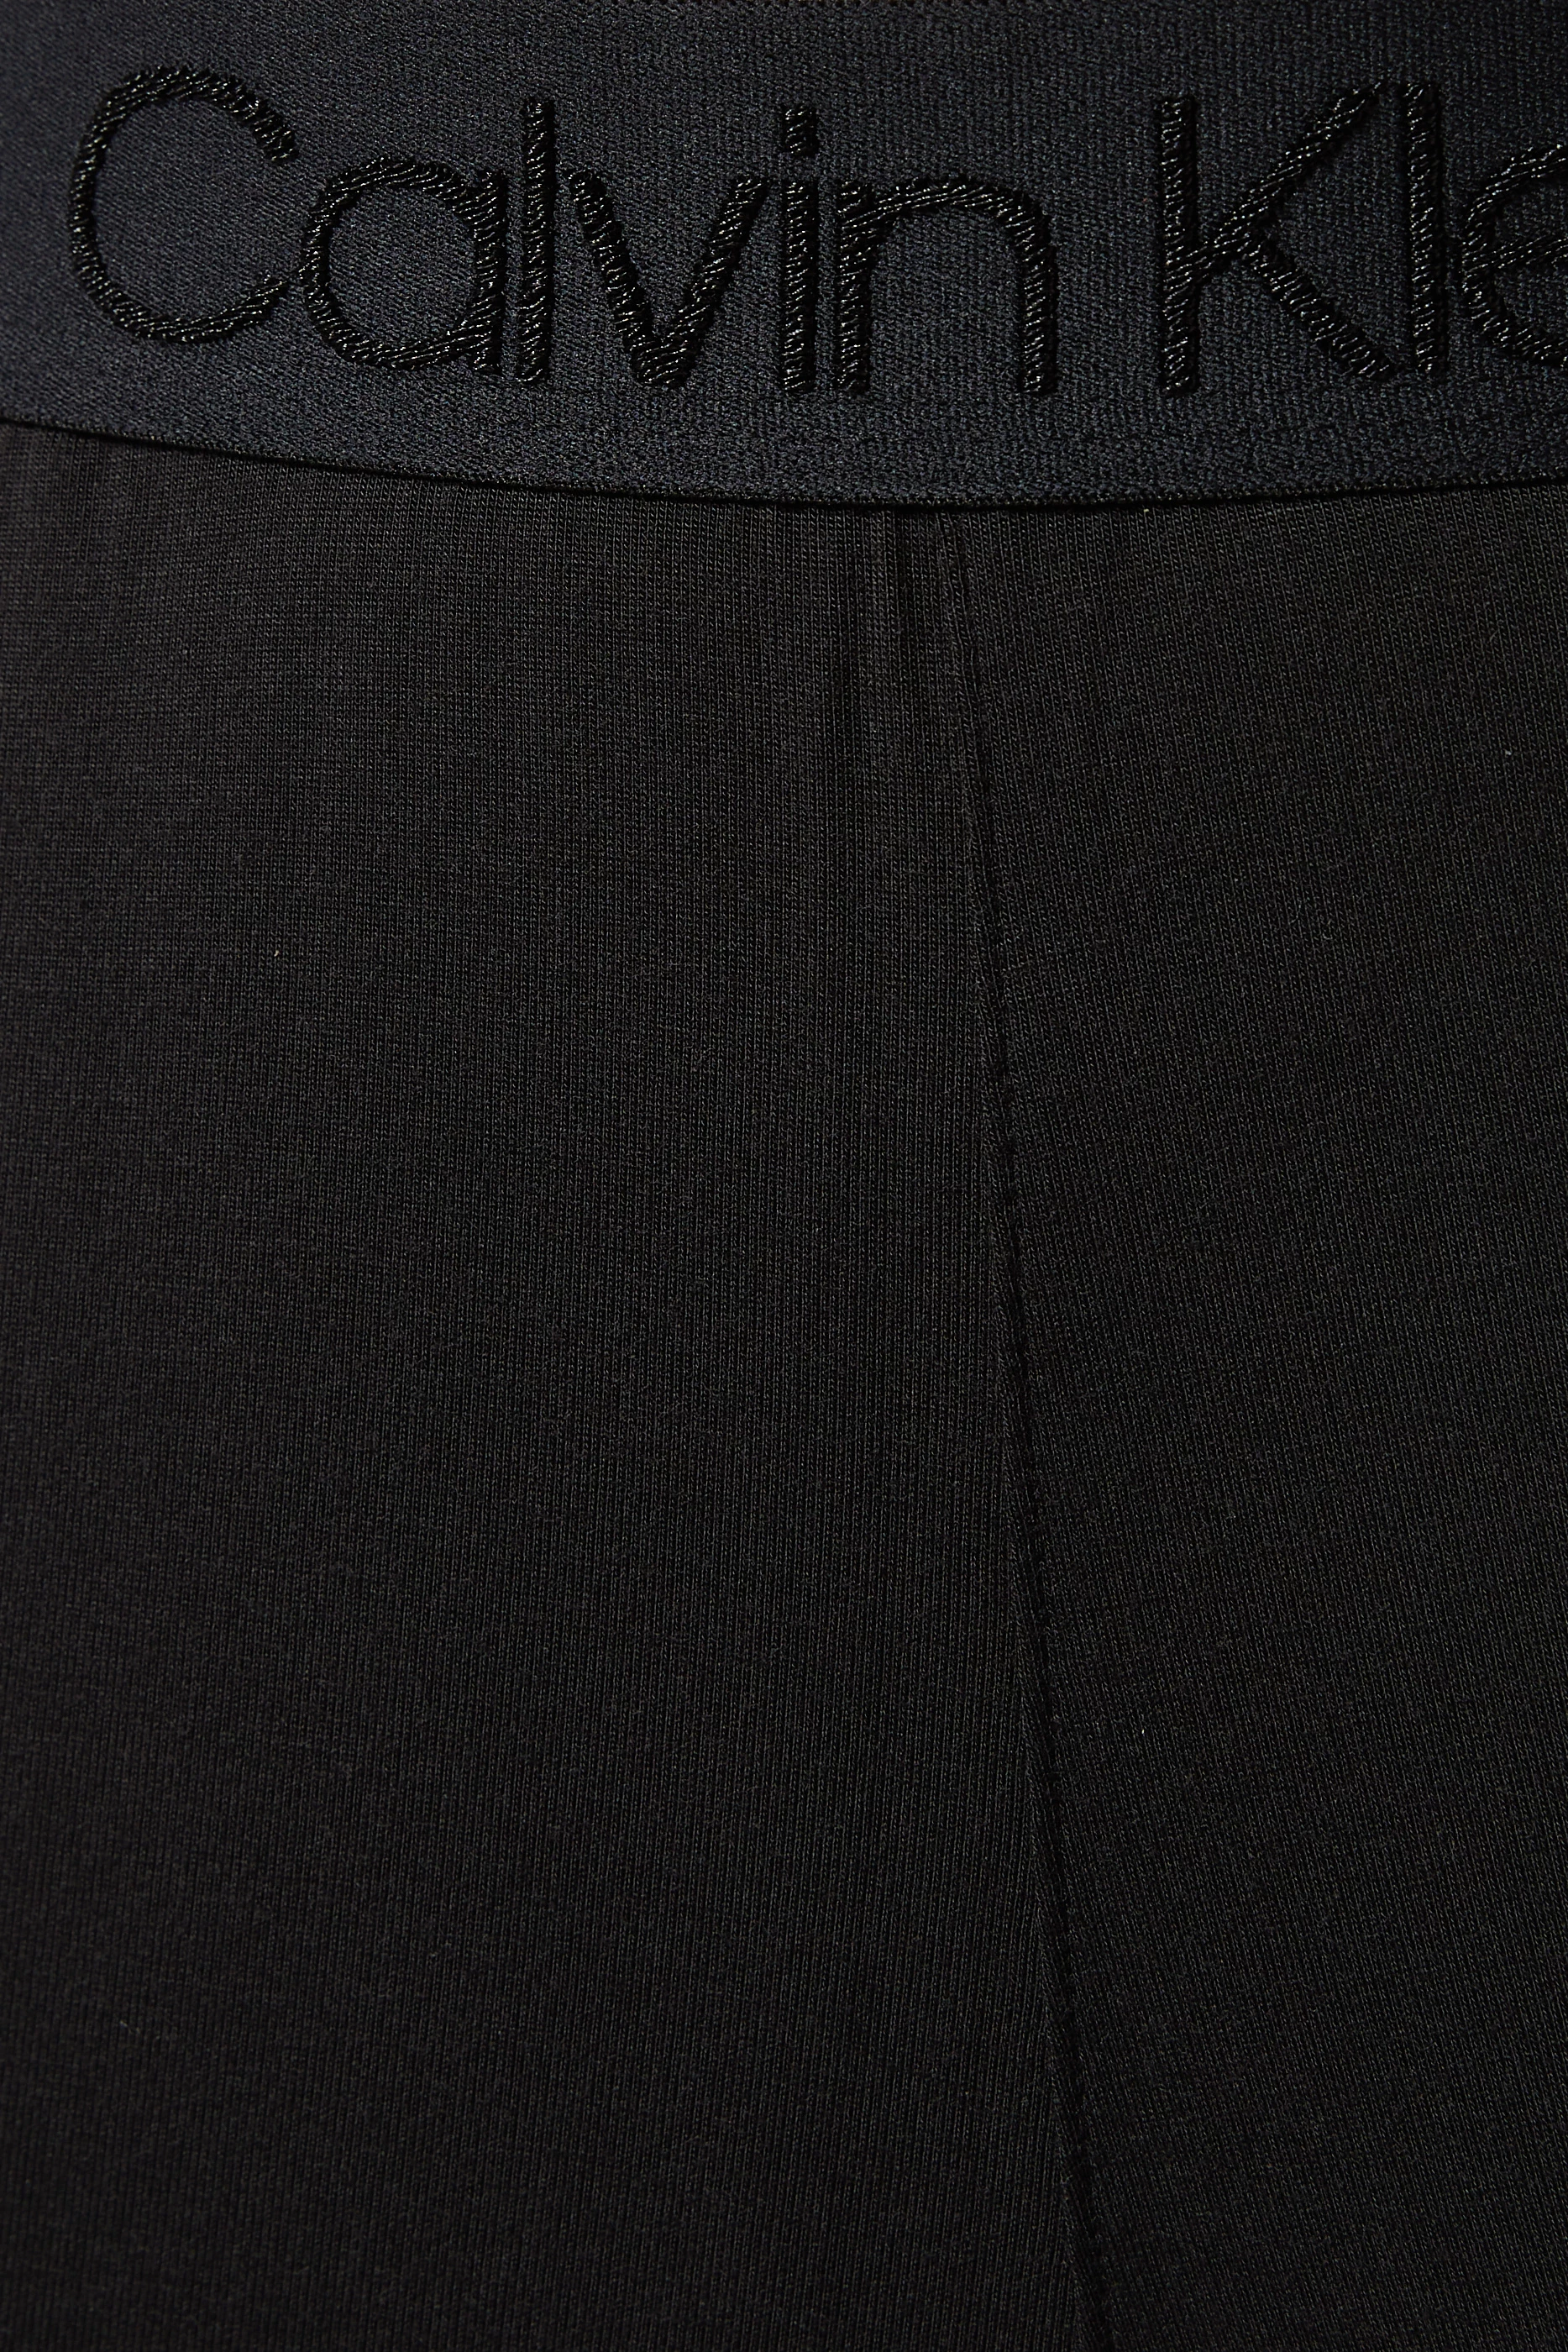 Calvin Klein Women's Modern Cotton Pyjama Bottoms, Black, Medium(M) : Buy  Online at Best Price in KSA - Souq is now : Fashion